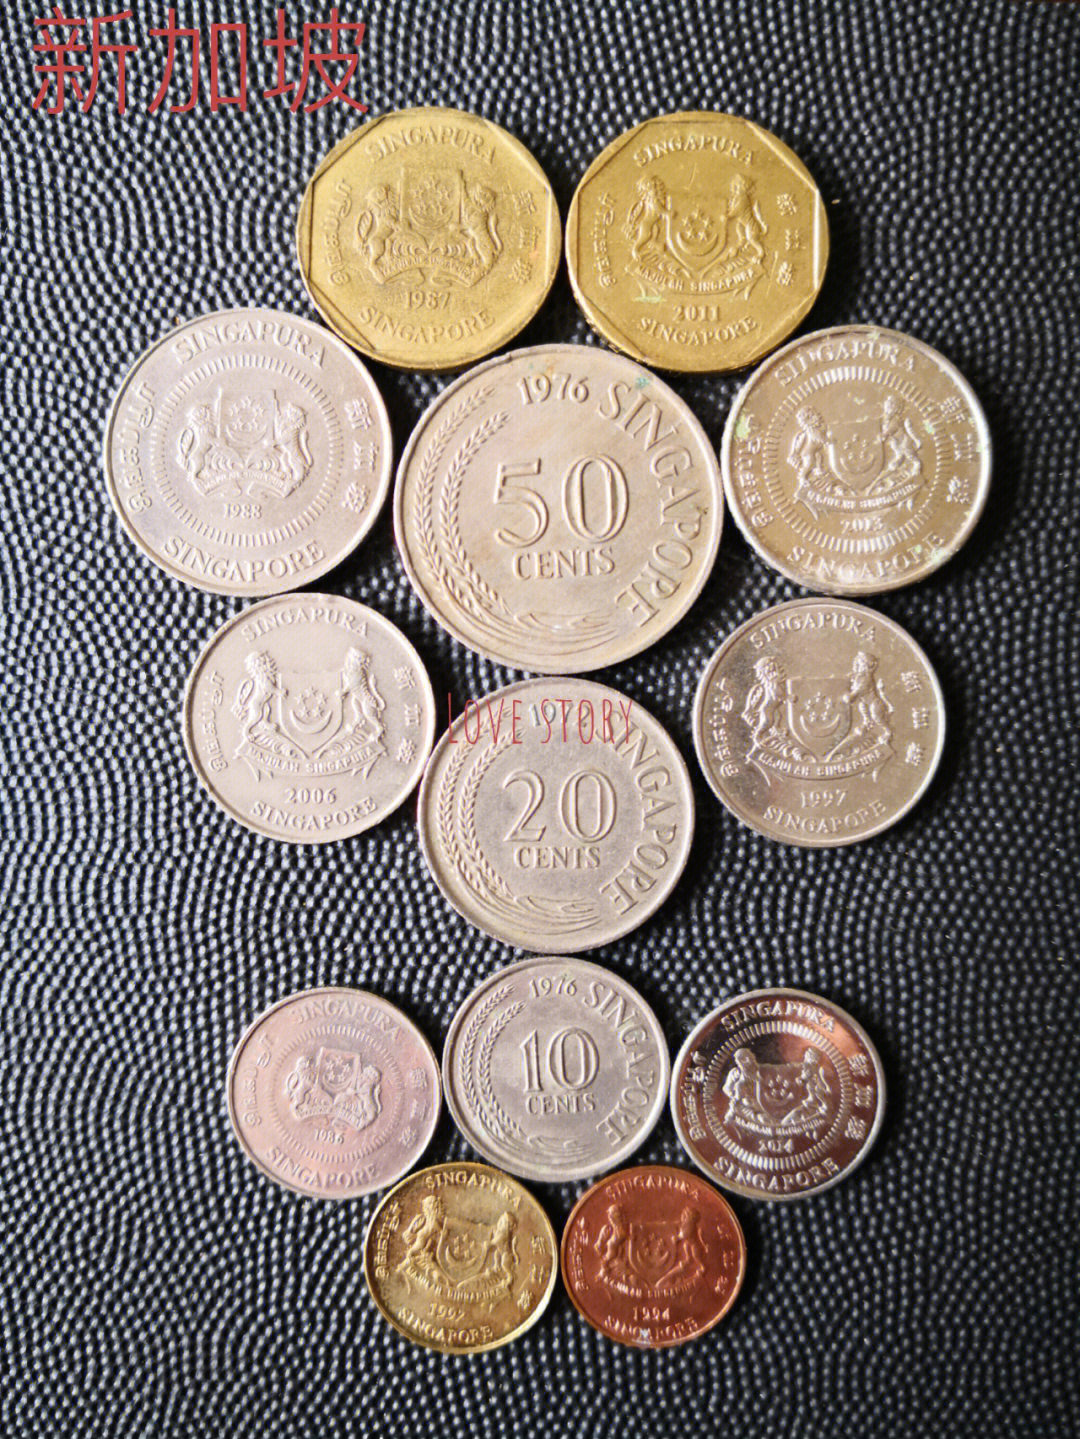 新加坡硬币20元图片